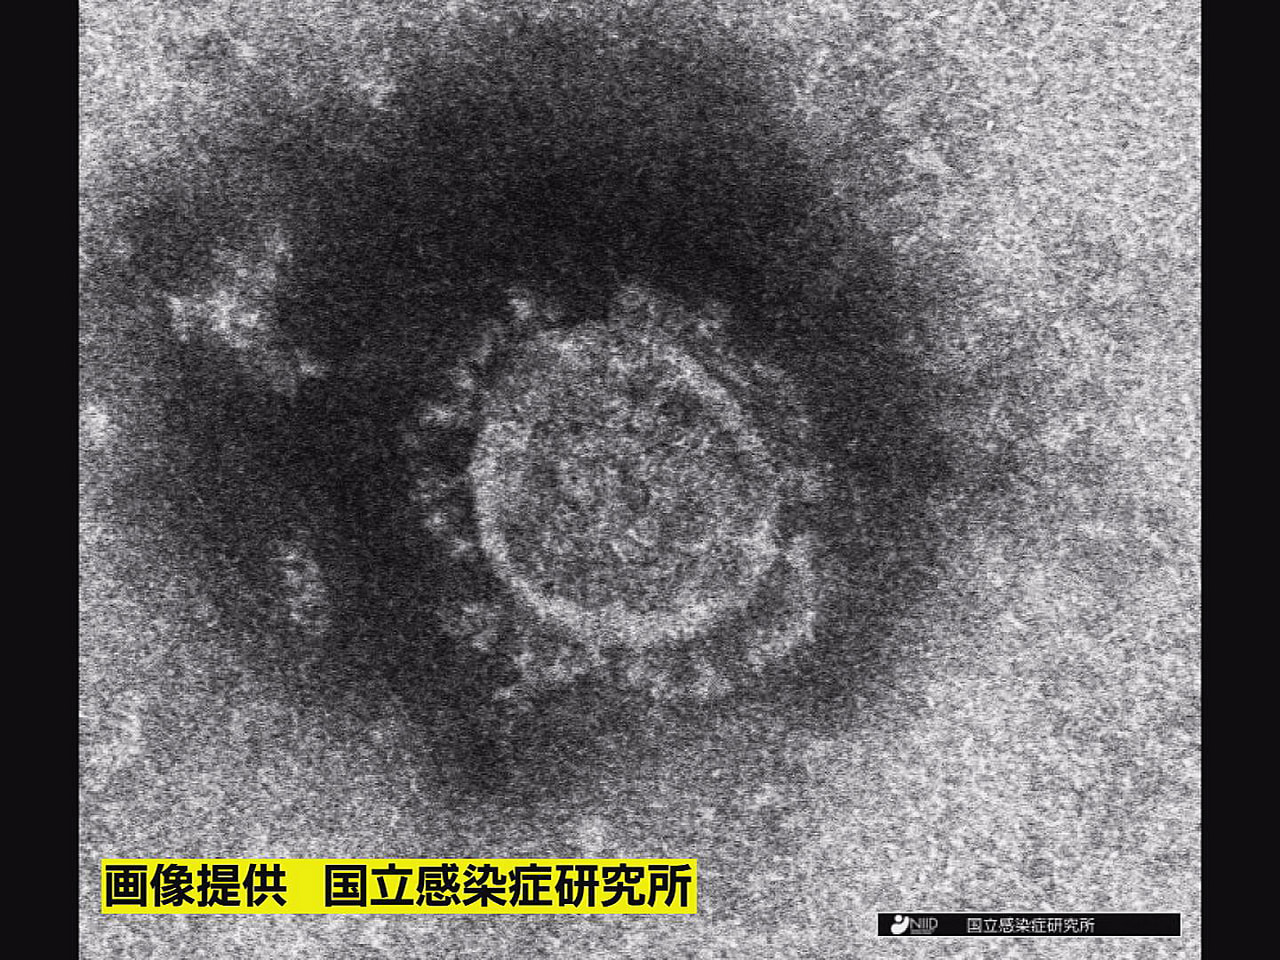 岐阜県は１３日、新型コロナウイルスの新規感染者が７０４人確認されたと発表しました...